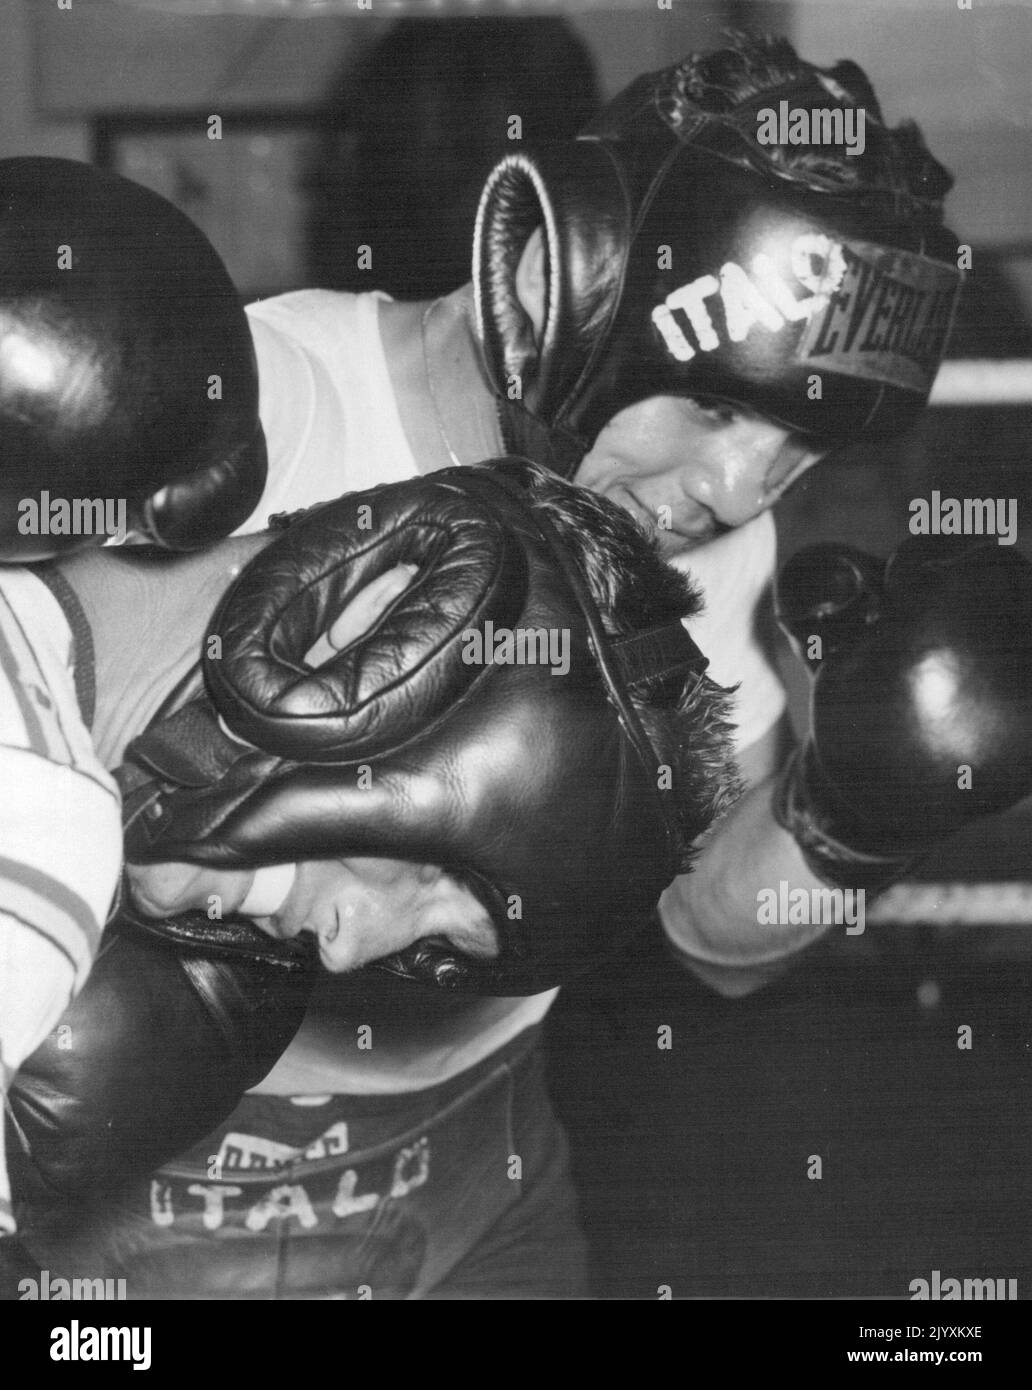 Italo Scortichini, qui combat Geo. Barnes ce soir à White City boxe à Robbins Erskineville Gym hier. 19 avril 1955. (Photo d'Ernie McQuillan, photo APA) Banque D'Images